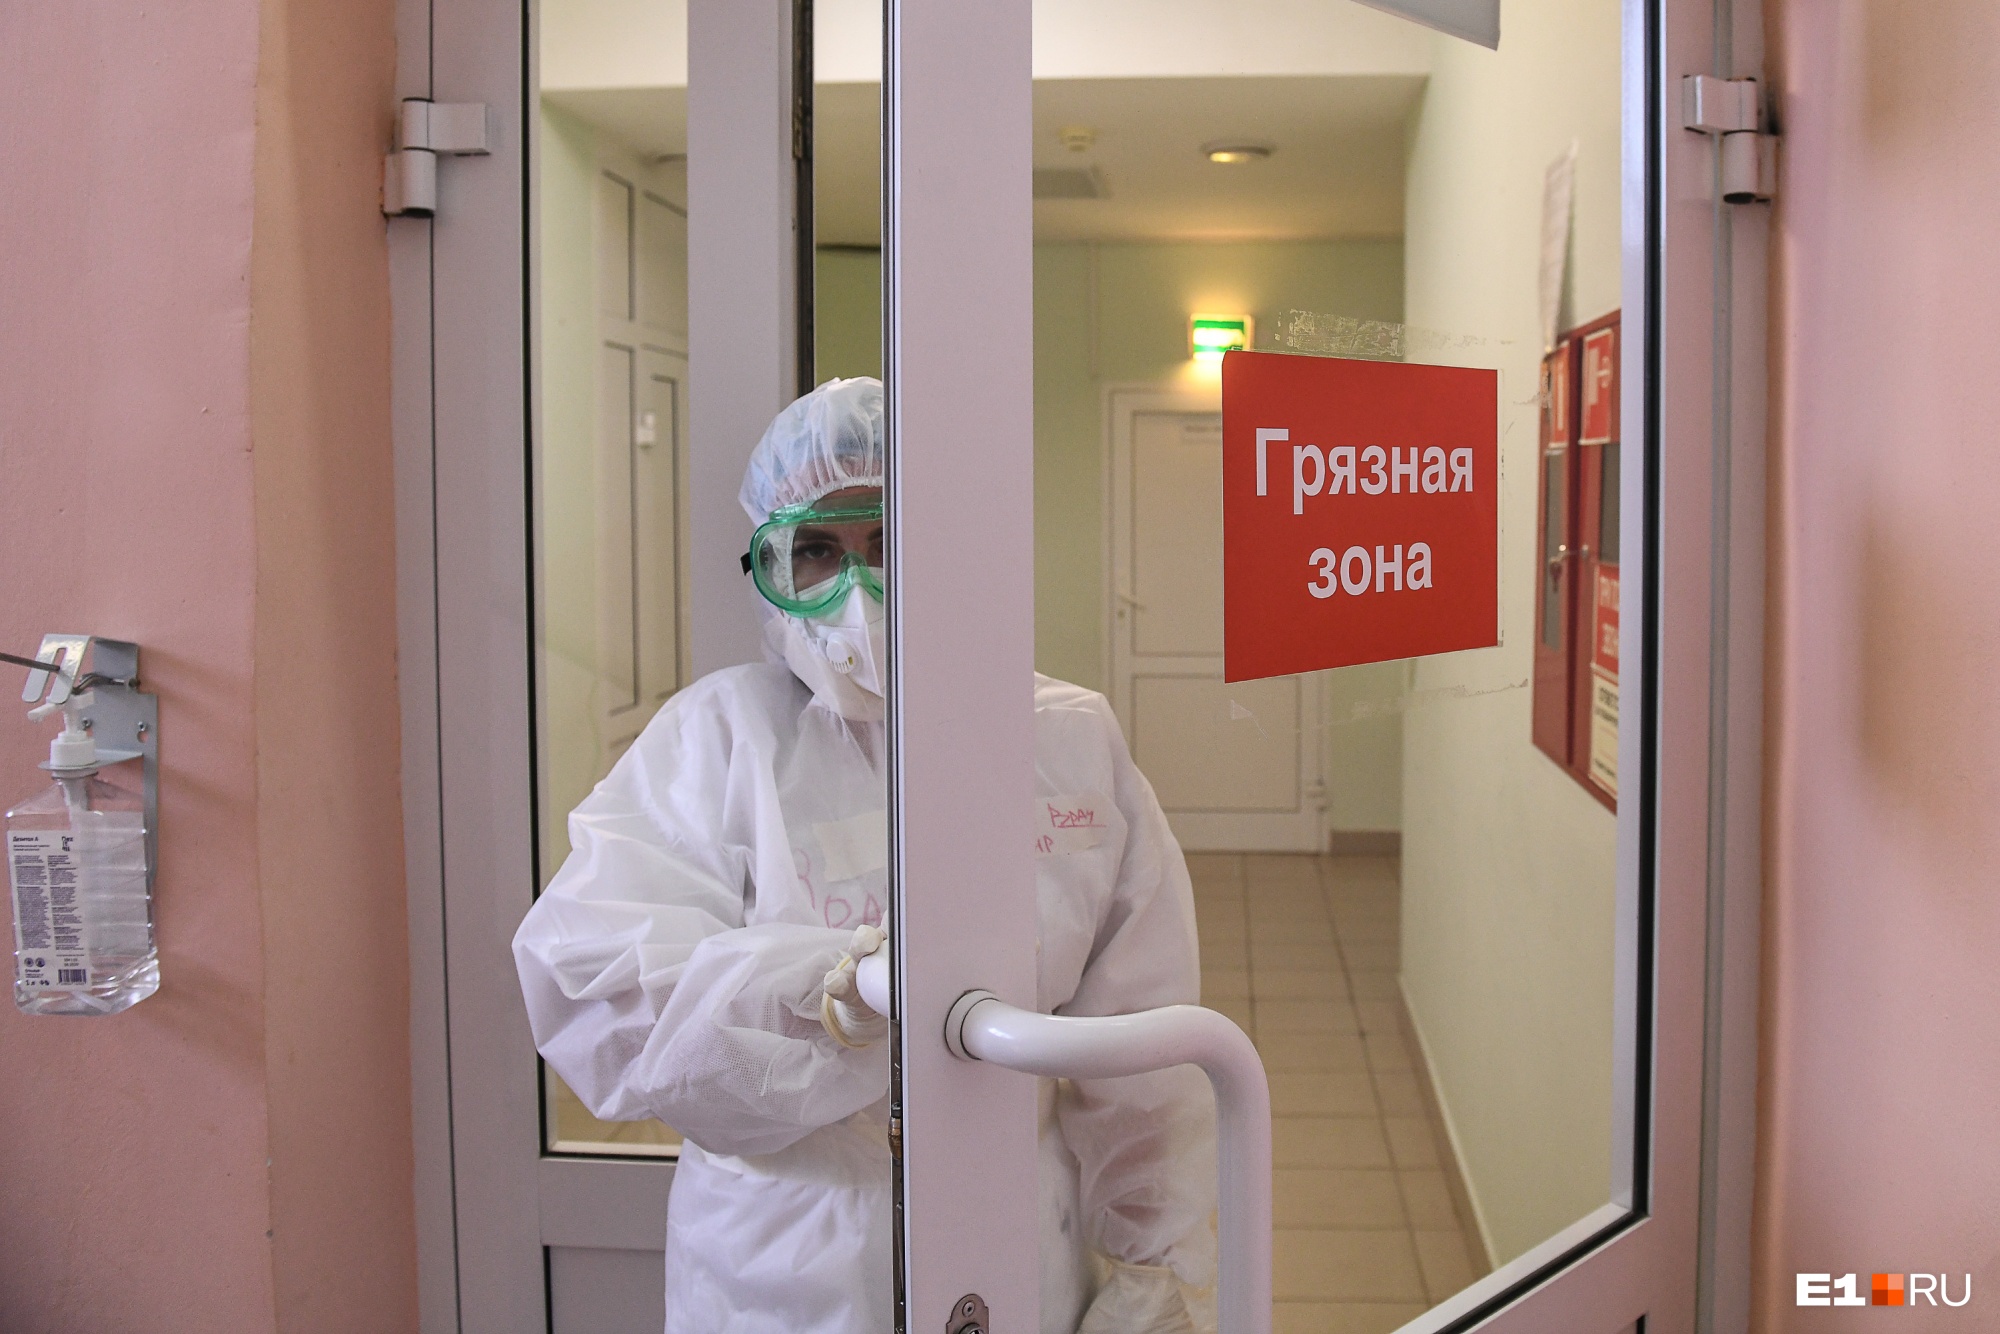 Путин наградил уральских медиков, которые борются с коронавирусом